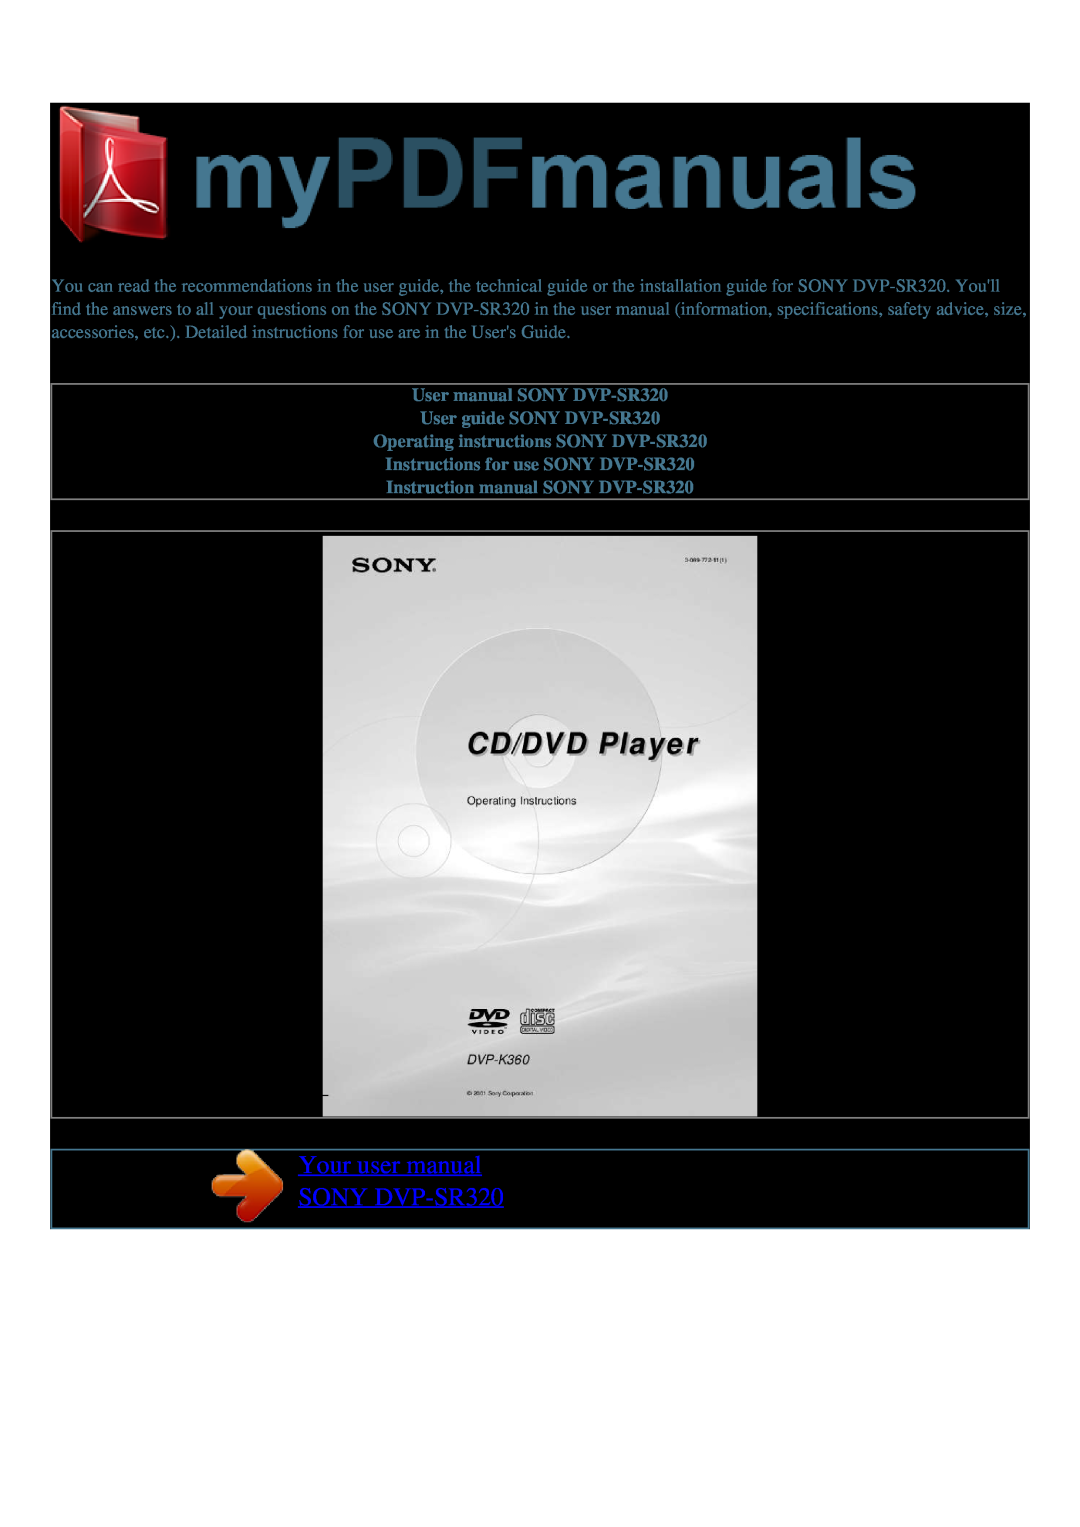 Sony user manual Your user manual SONY DVP-SR320, User manual SONY DVP-SR320 User guide SONY DVP-SR320 